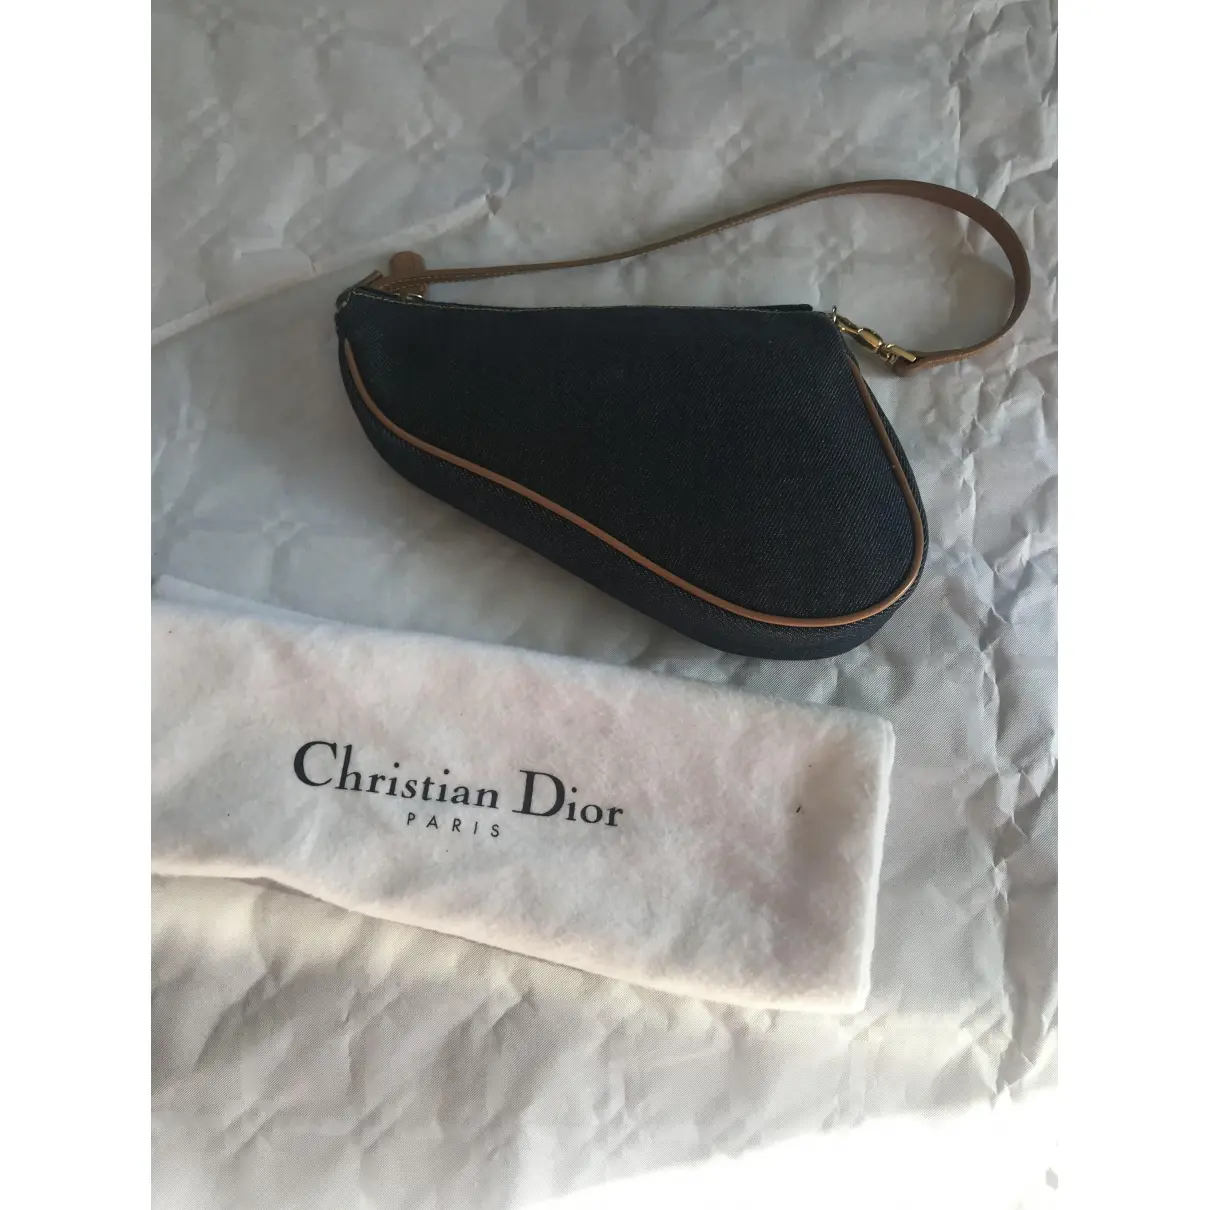 Buy Dior Saddle clutch bag online